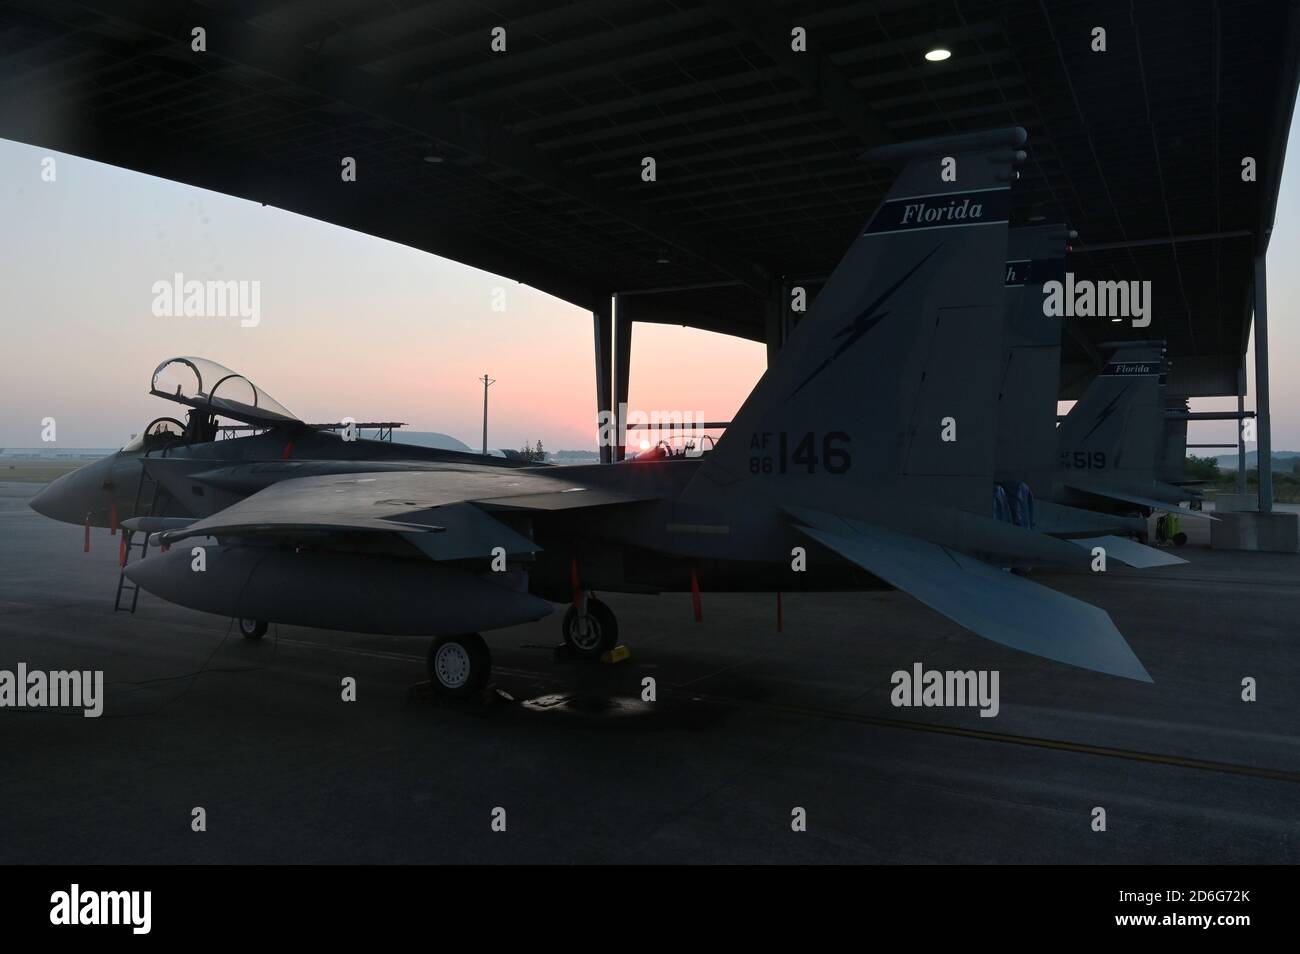 Un aereo della U.S. Air Force F-15 è raffigurato sulla linea di volo durante un alba mattutina presso la 125th Fighter Wing, situata alla Jacksonville Air National Guard base, Florida, 14 ottobre 2020. Foto Stock